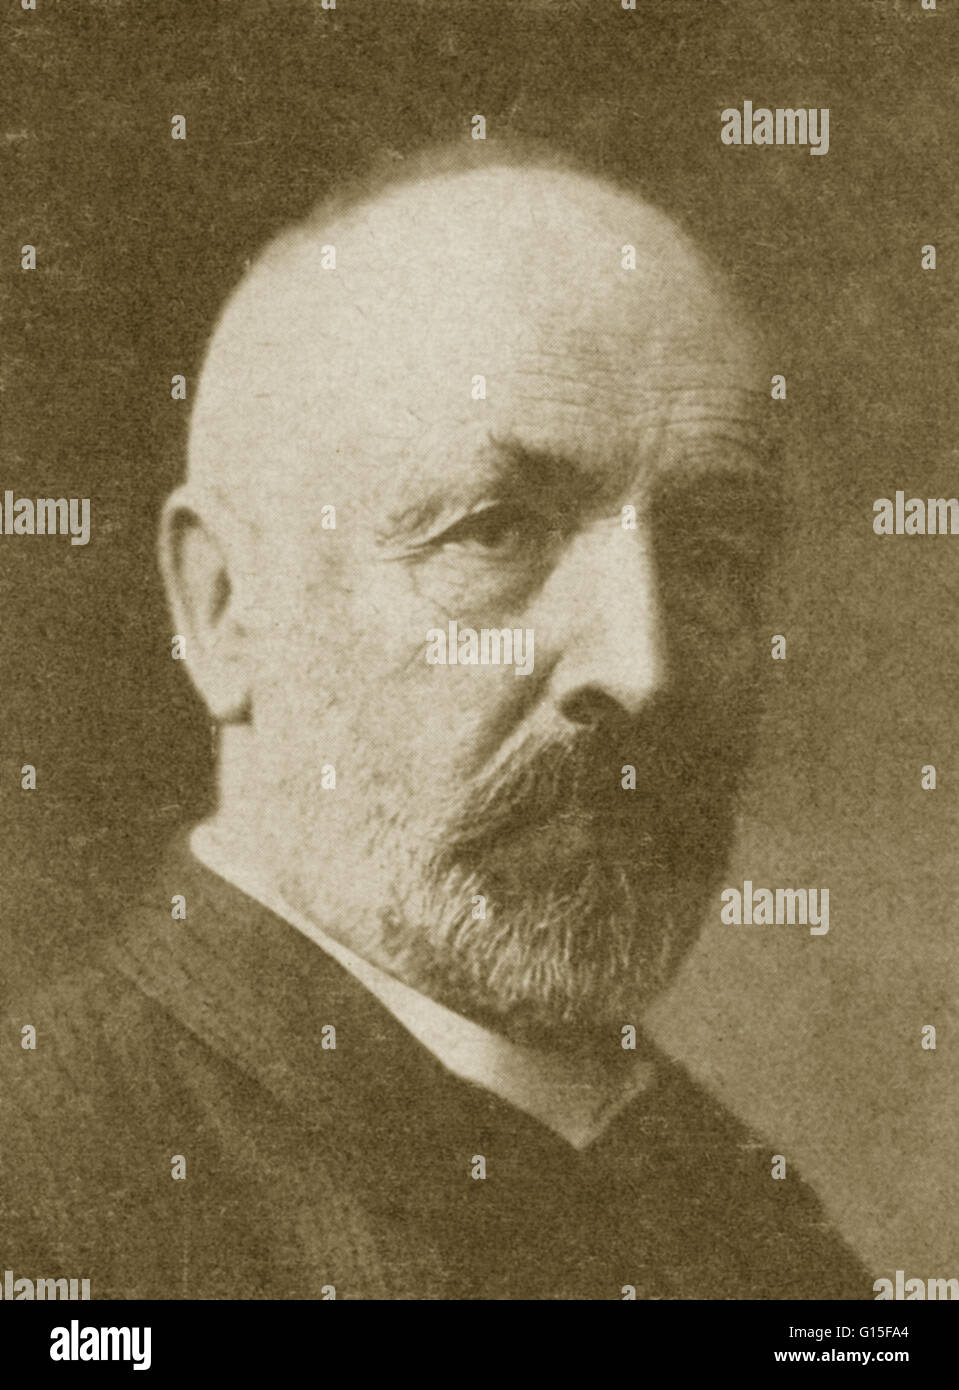 Georg Ferdinand Ludwig Philipp Cantor (1845-1918) era un matematico tedesco, meglio conosciuto come inventore della teoria degli insiemi, che è diventata una teoria fondamentale in matematica. Cantor ha stabilito la importanza della corrispondenza uno a uno tra i set, defi Foto Stock